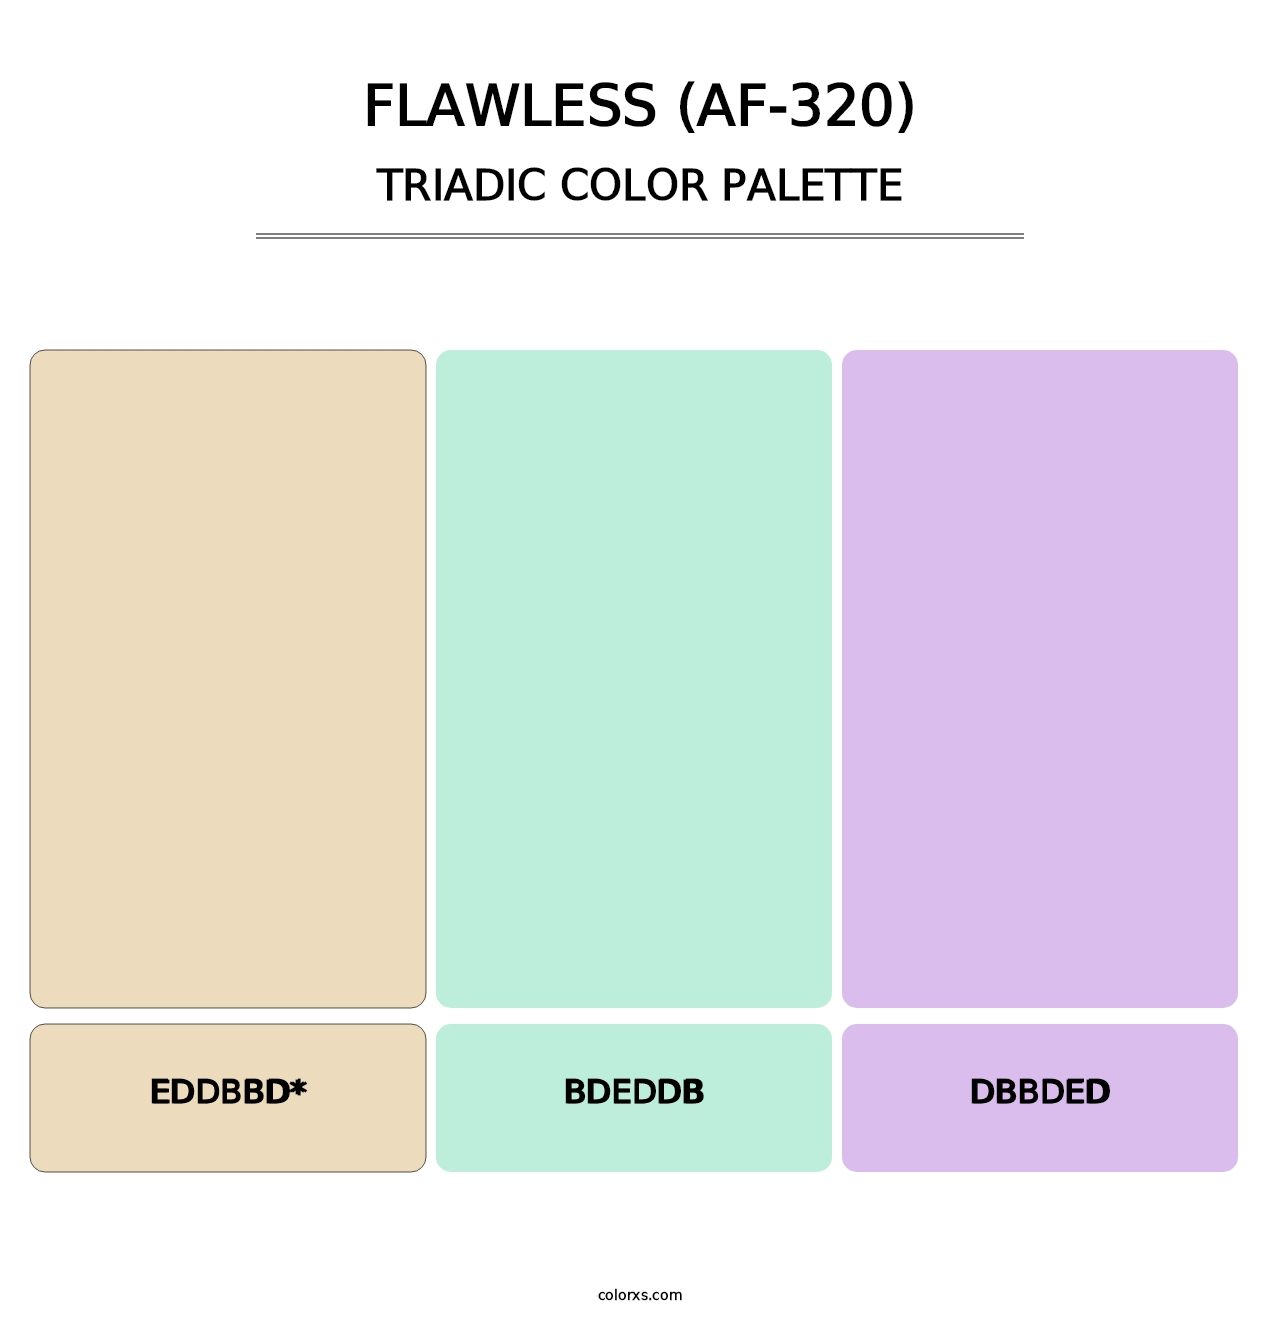 Flawless (AF-320) - Triadic Color Palette